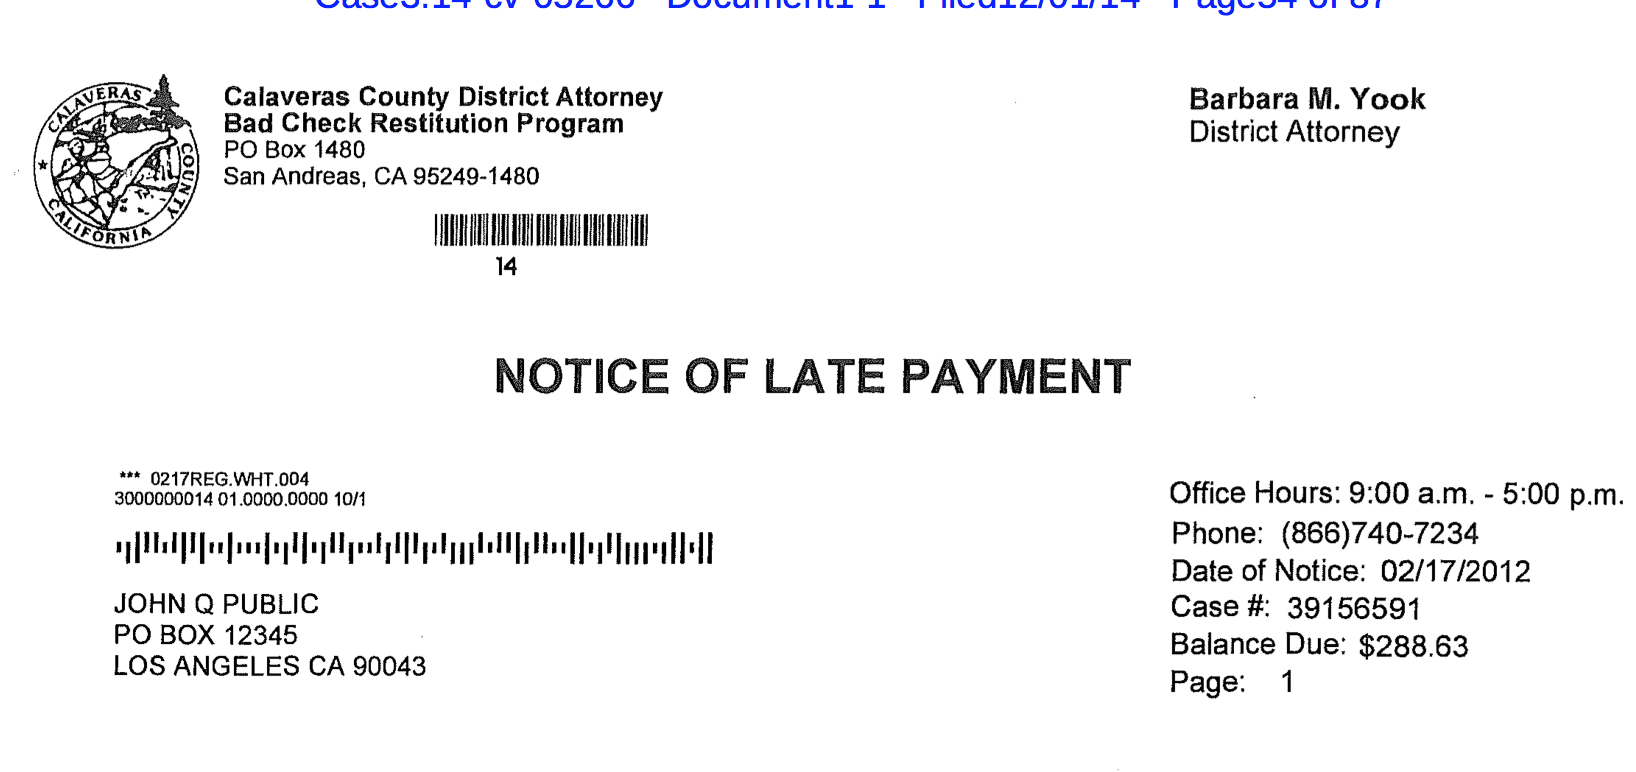 debt settlement offer letter template